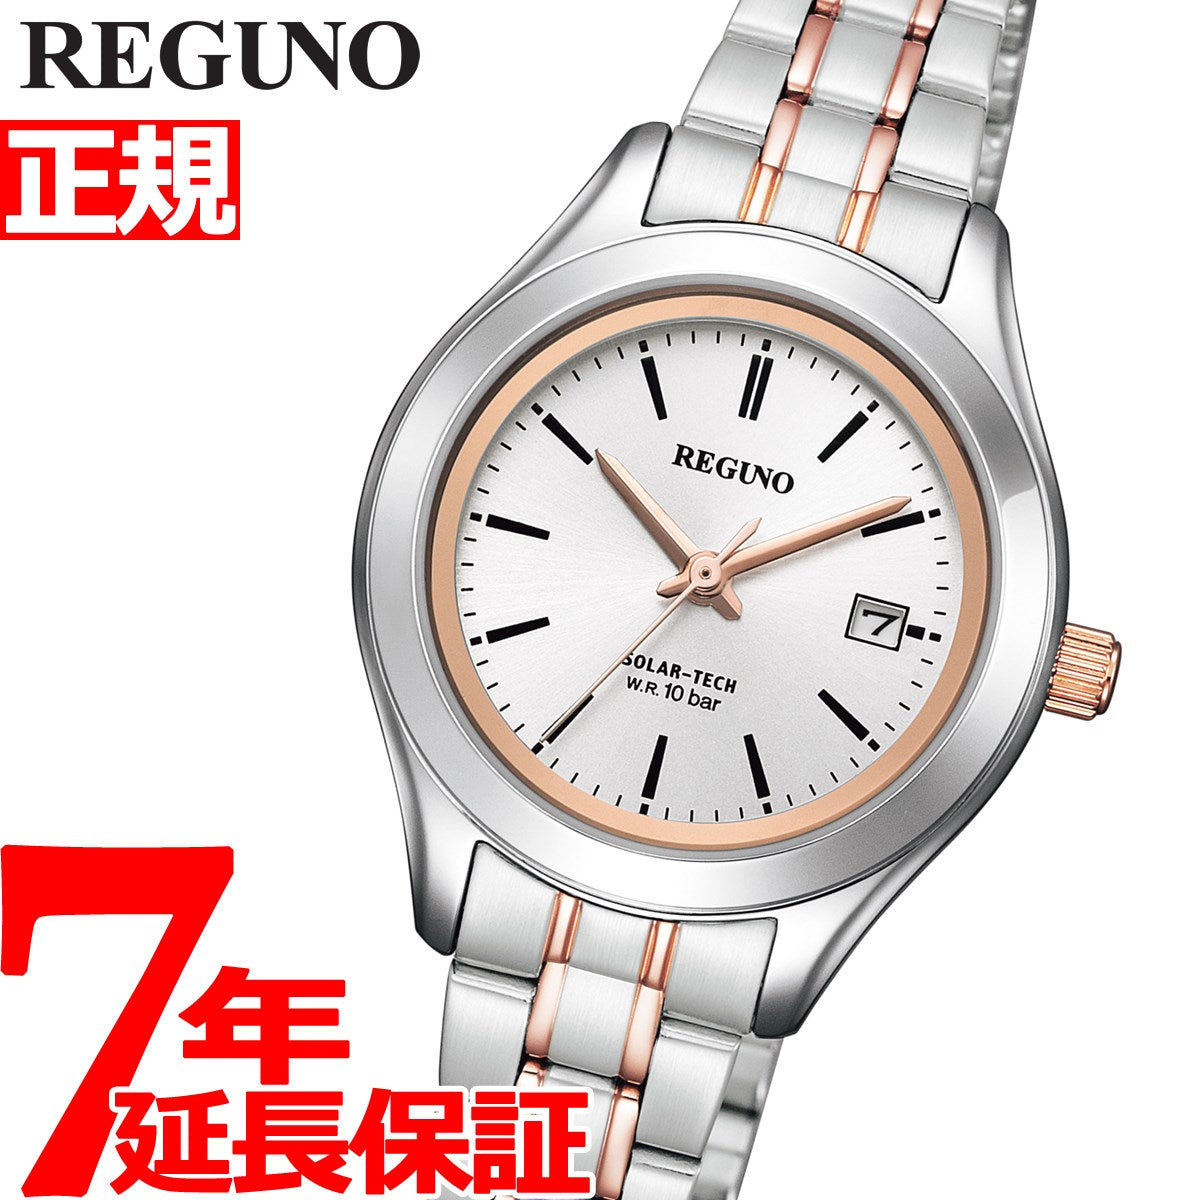 シチズン レグノ CITIZEN REGUNO ソーラーテック 腕時計 ペア レディース スタンダード リングソーラー KM4-139-91